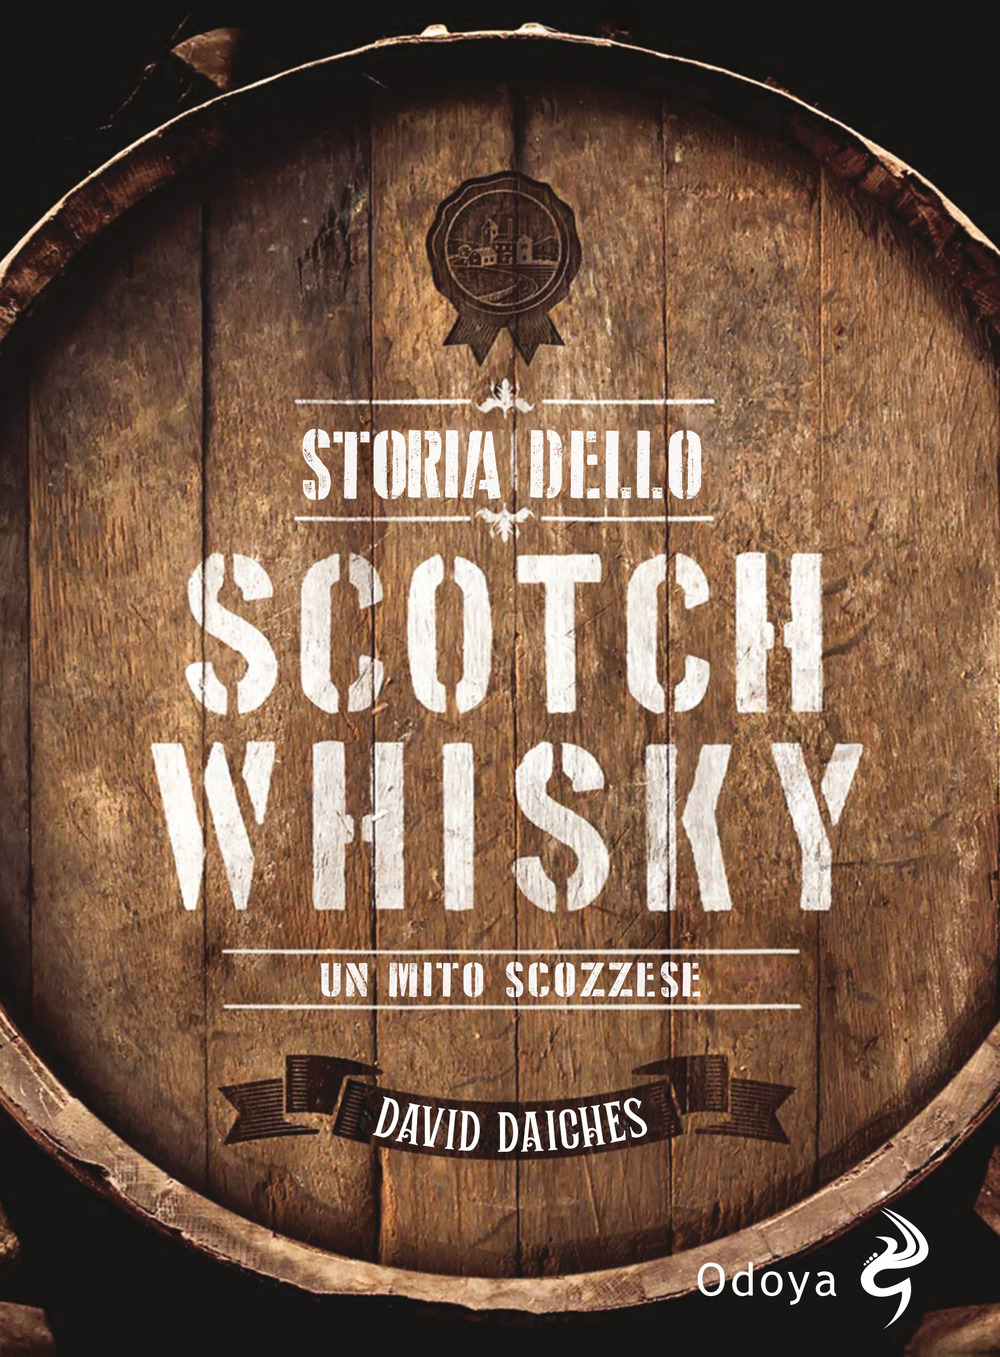 Libri David Daiches - Storia Dello Scotch Whisky. Un Mito Scozzese NUOVO SIGILLATO, EDIZIONE DEL 28/04/2023 SUBITO DISPONIBILE